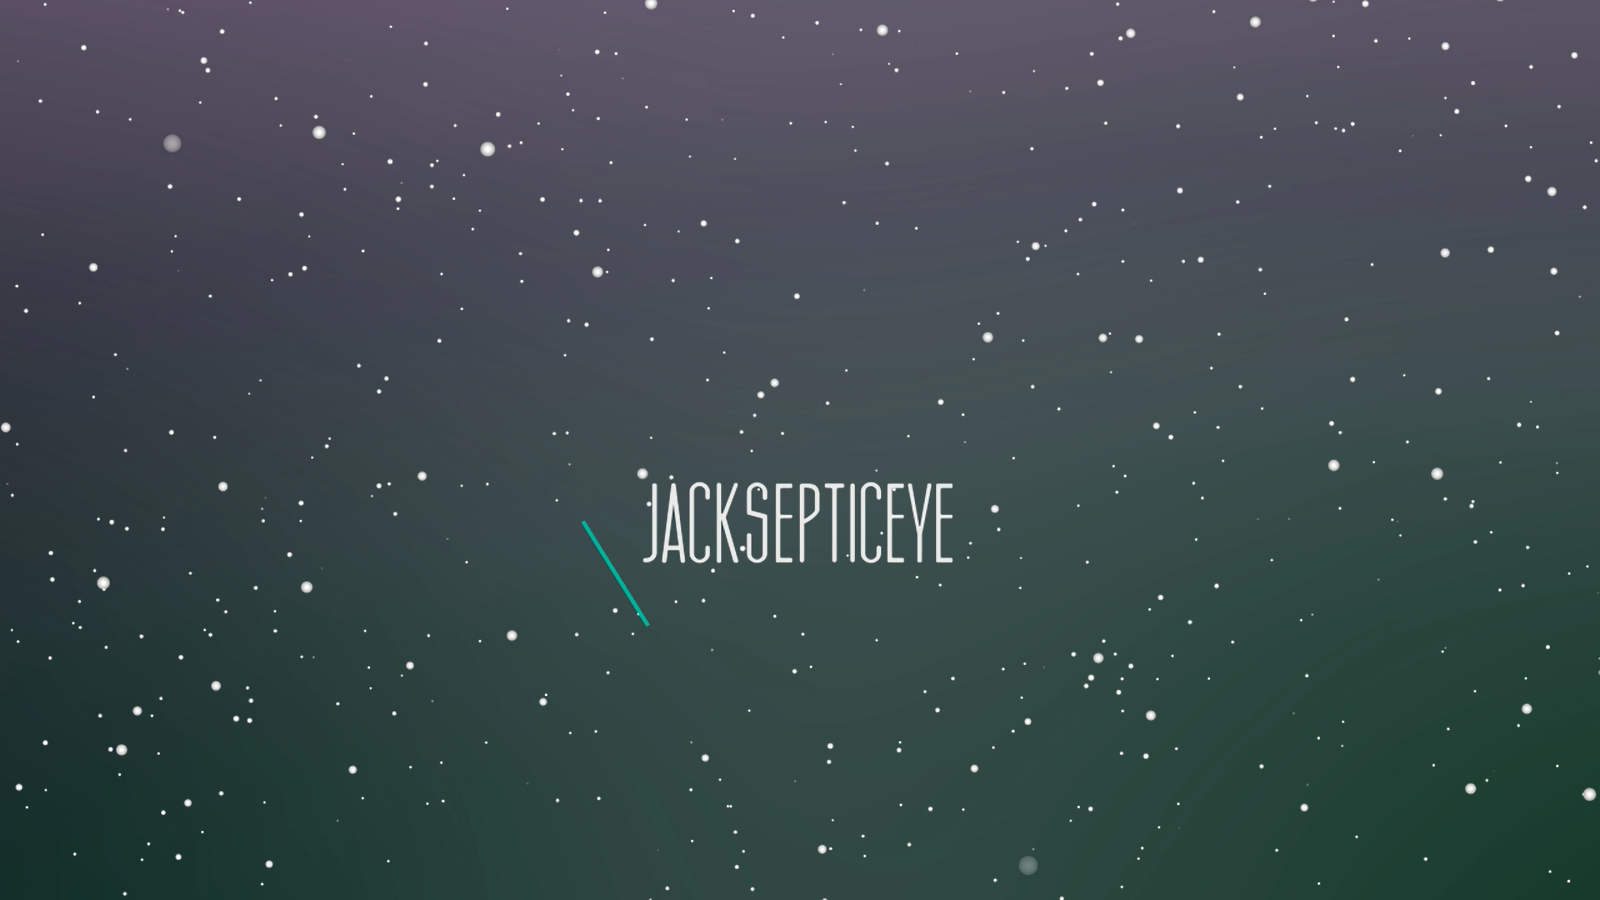 Jacksepticeye Wallpaper by JoeyTobie on